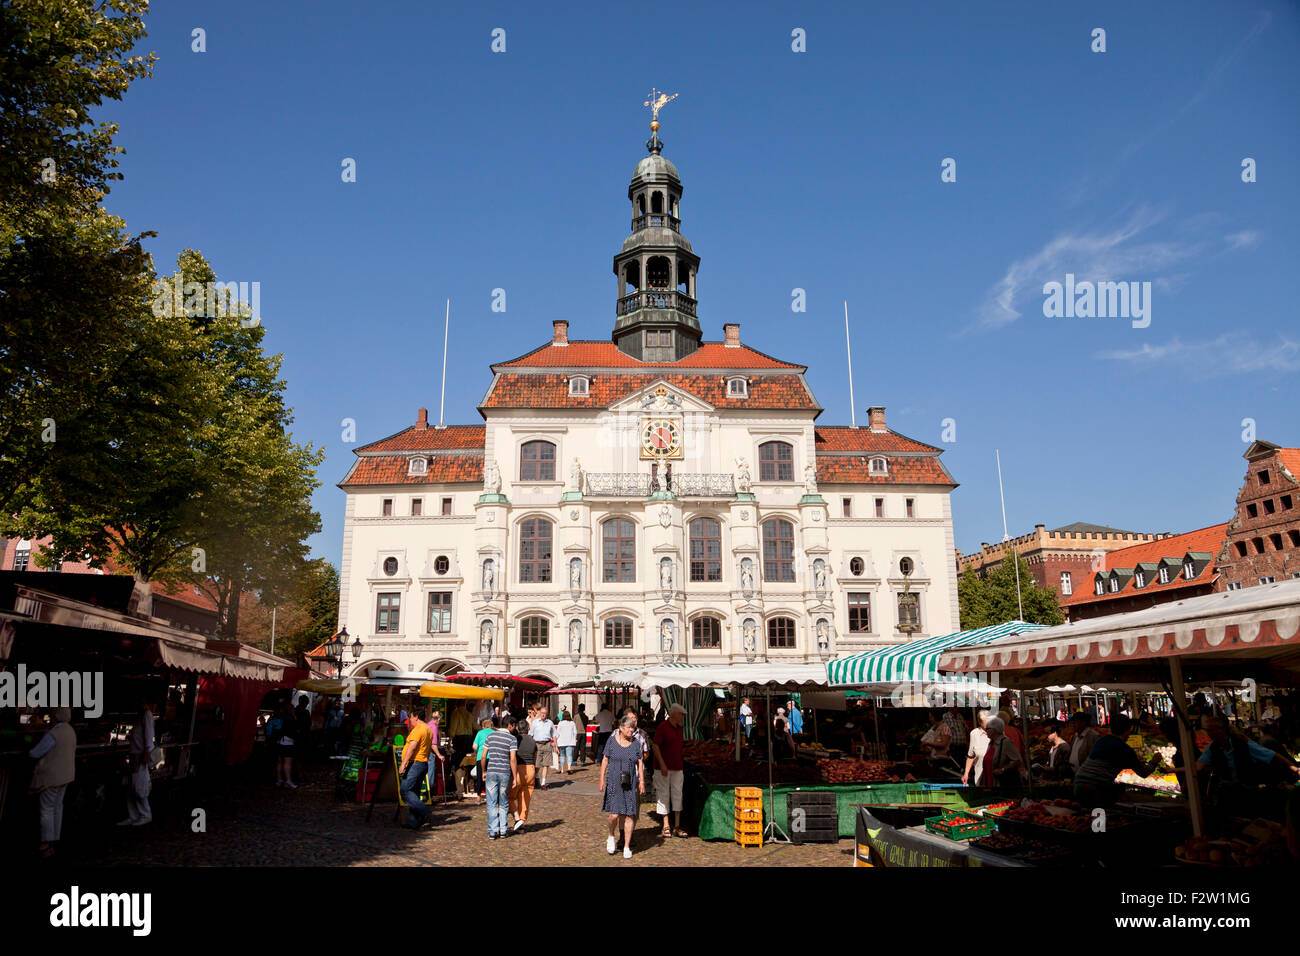 Hôtel de ville historique et du marché, la ville hanséatique de Lunebourg, Basse-Saxe, Allemagne Banque D'Images